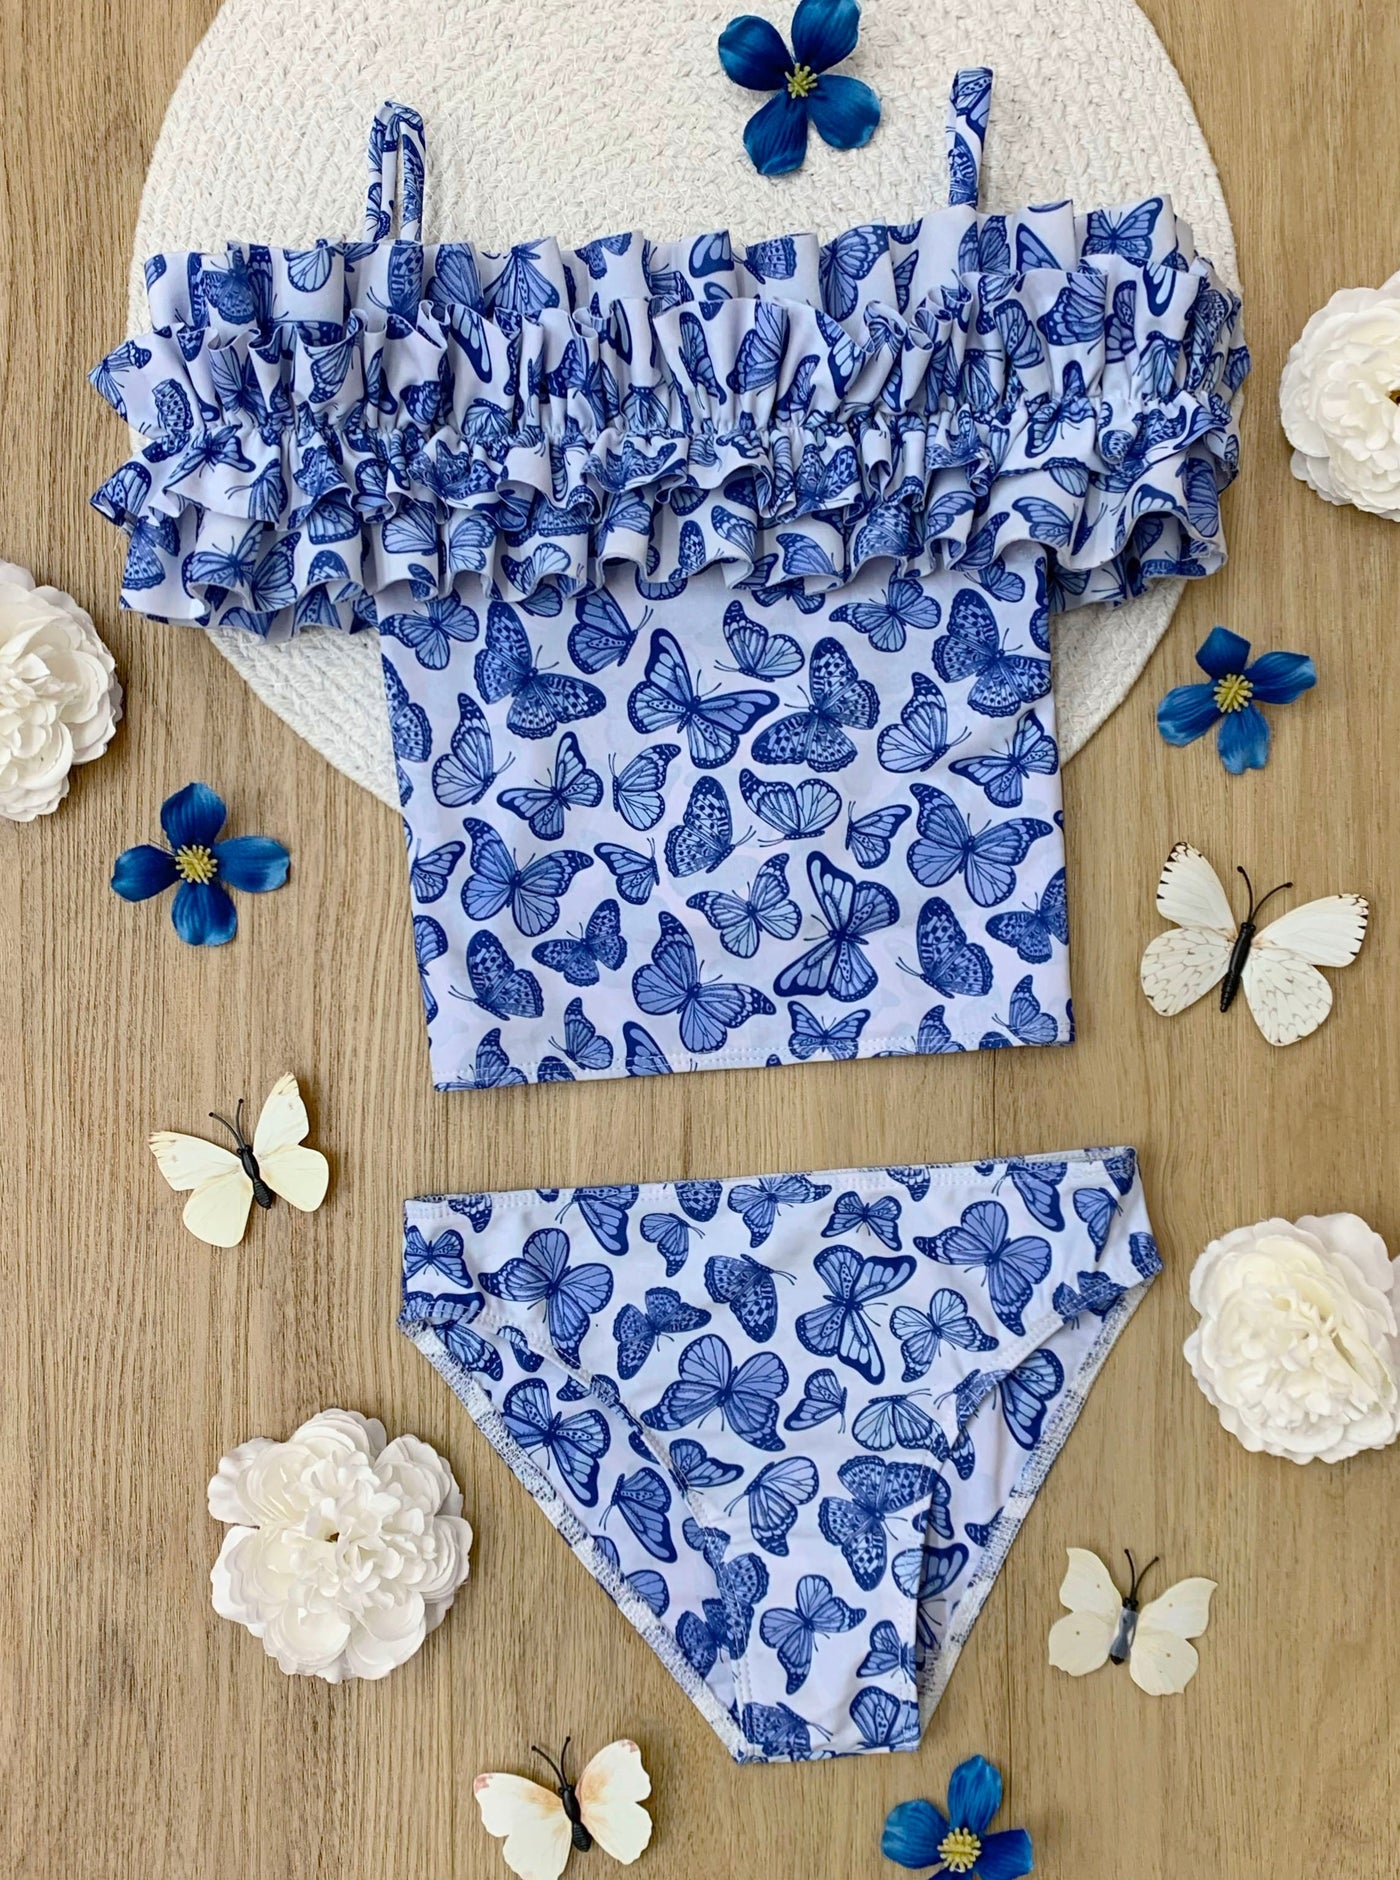 Mia Belle Girls Swimwear | Butterfly Ruffle Tankini Two Piece Swimsuit